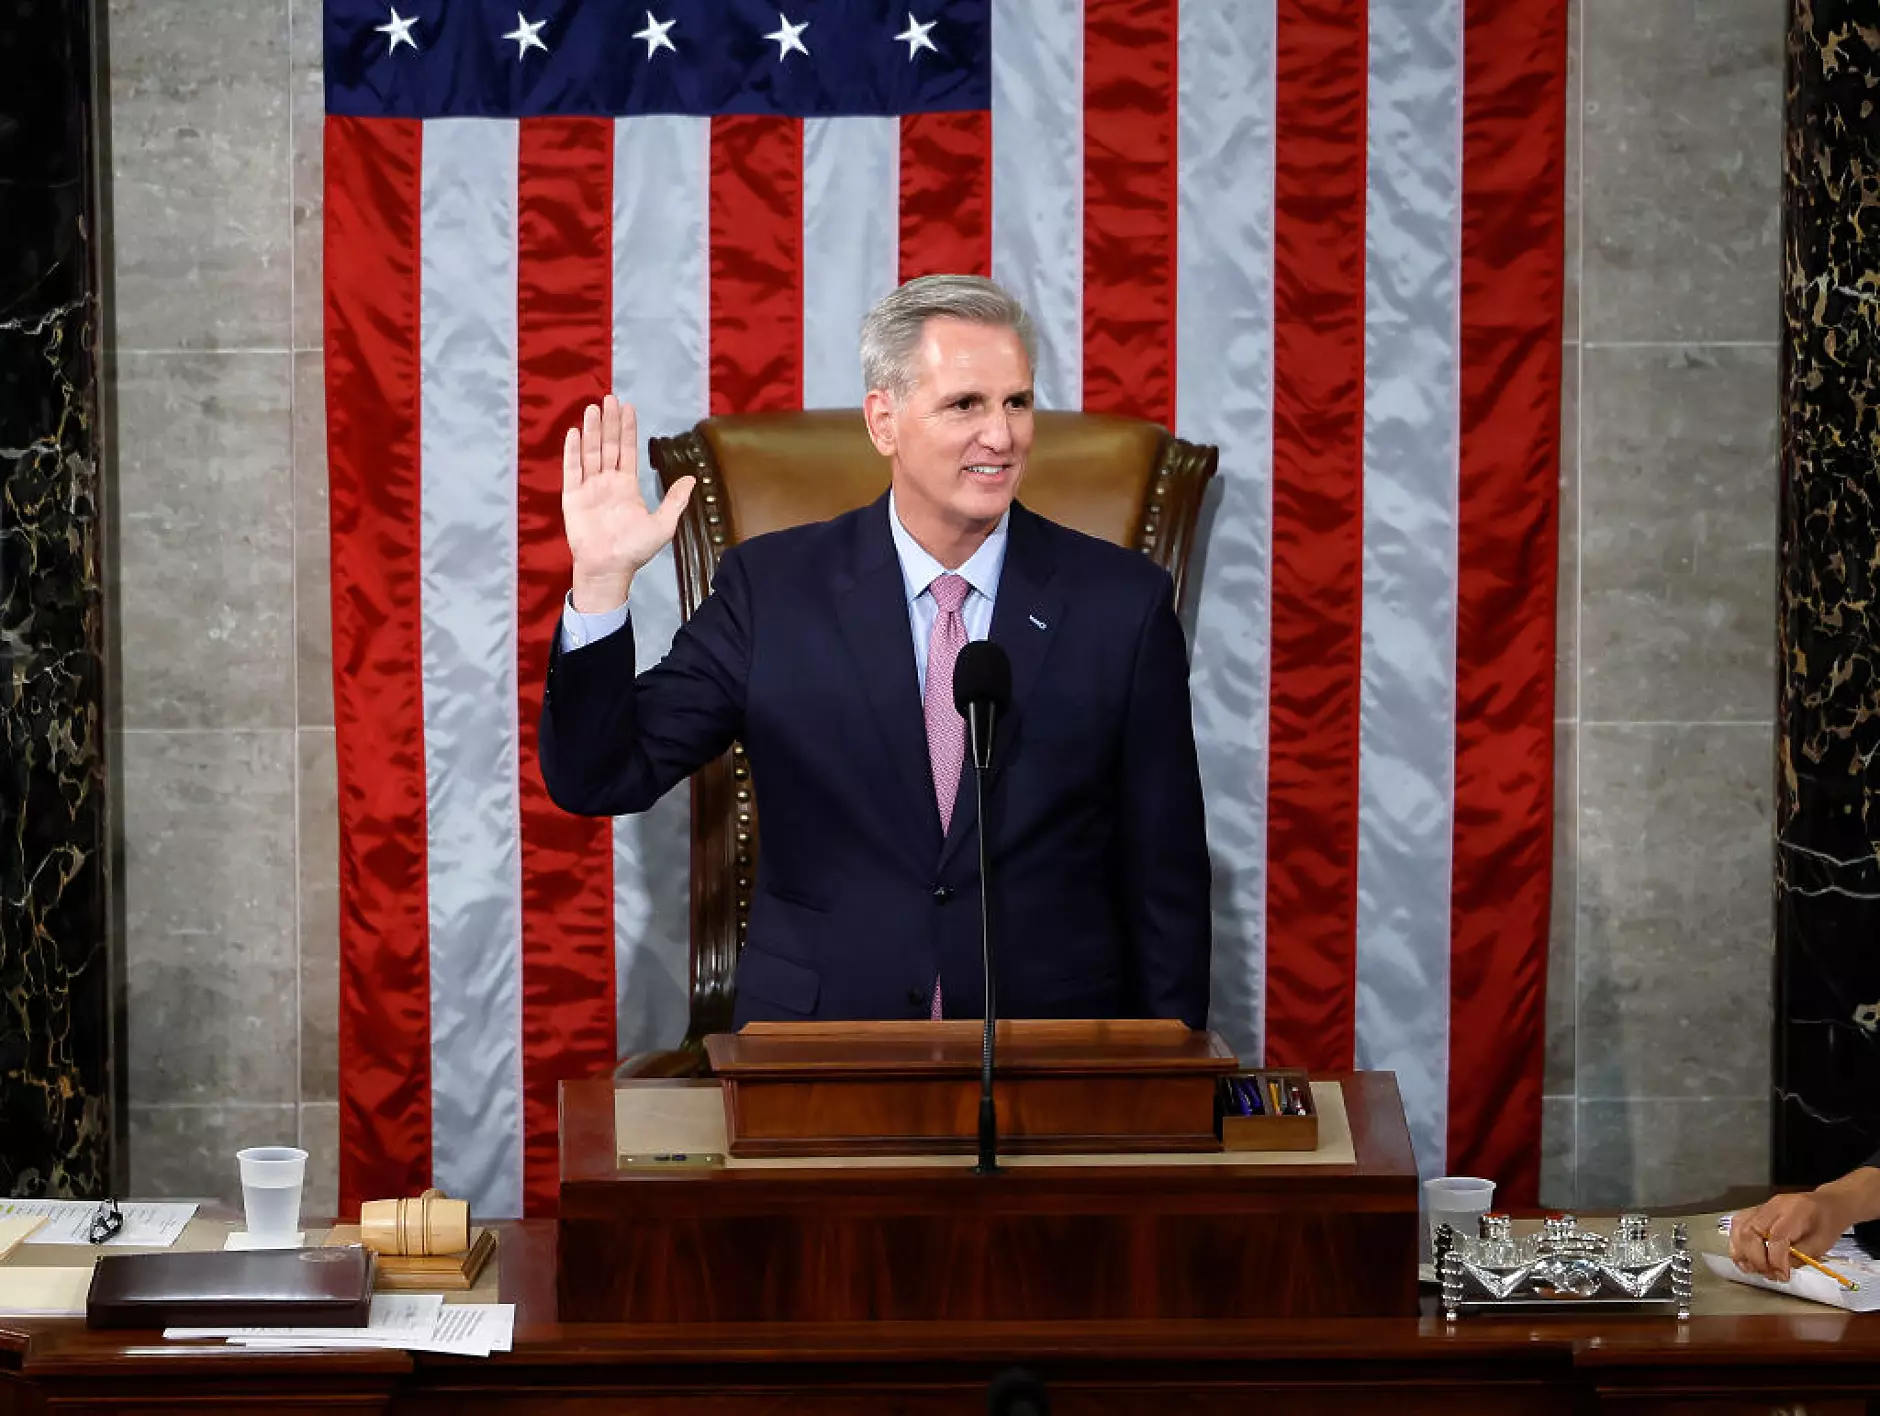 Кевин Маккарти е новият председател на Камарата на представителите на Конгреса на САЩ